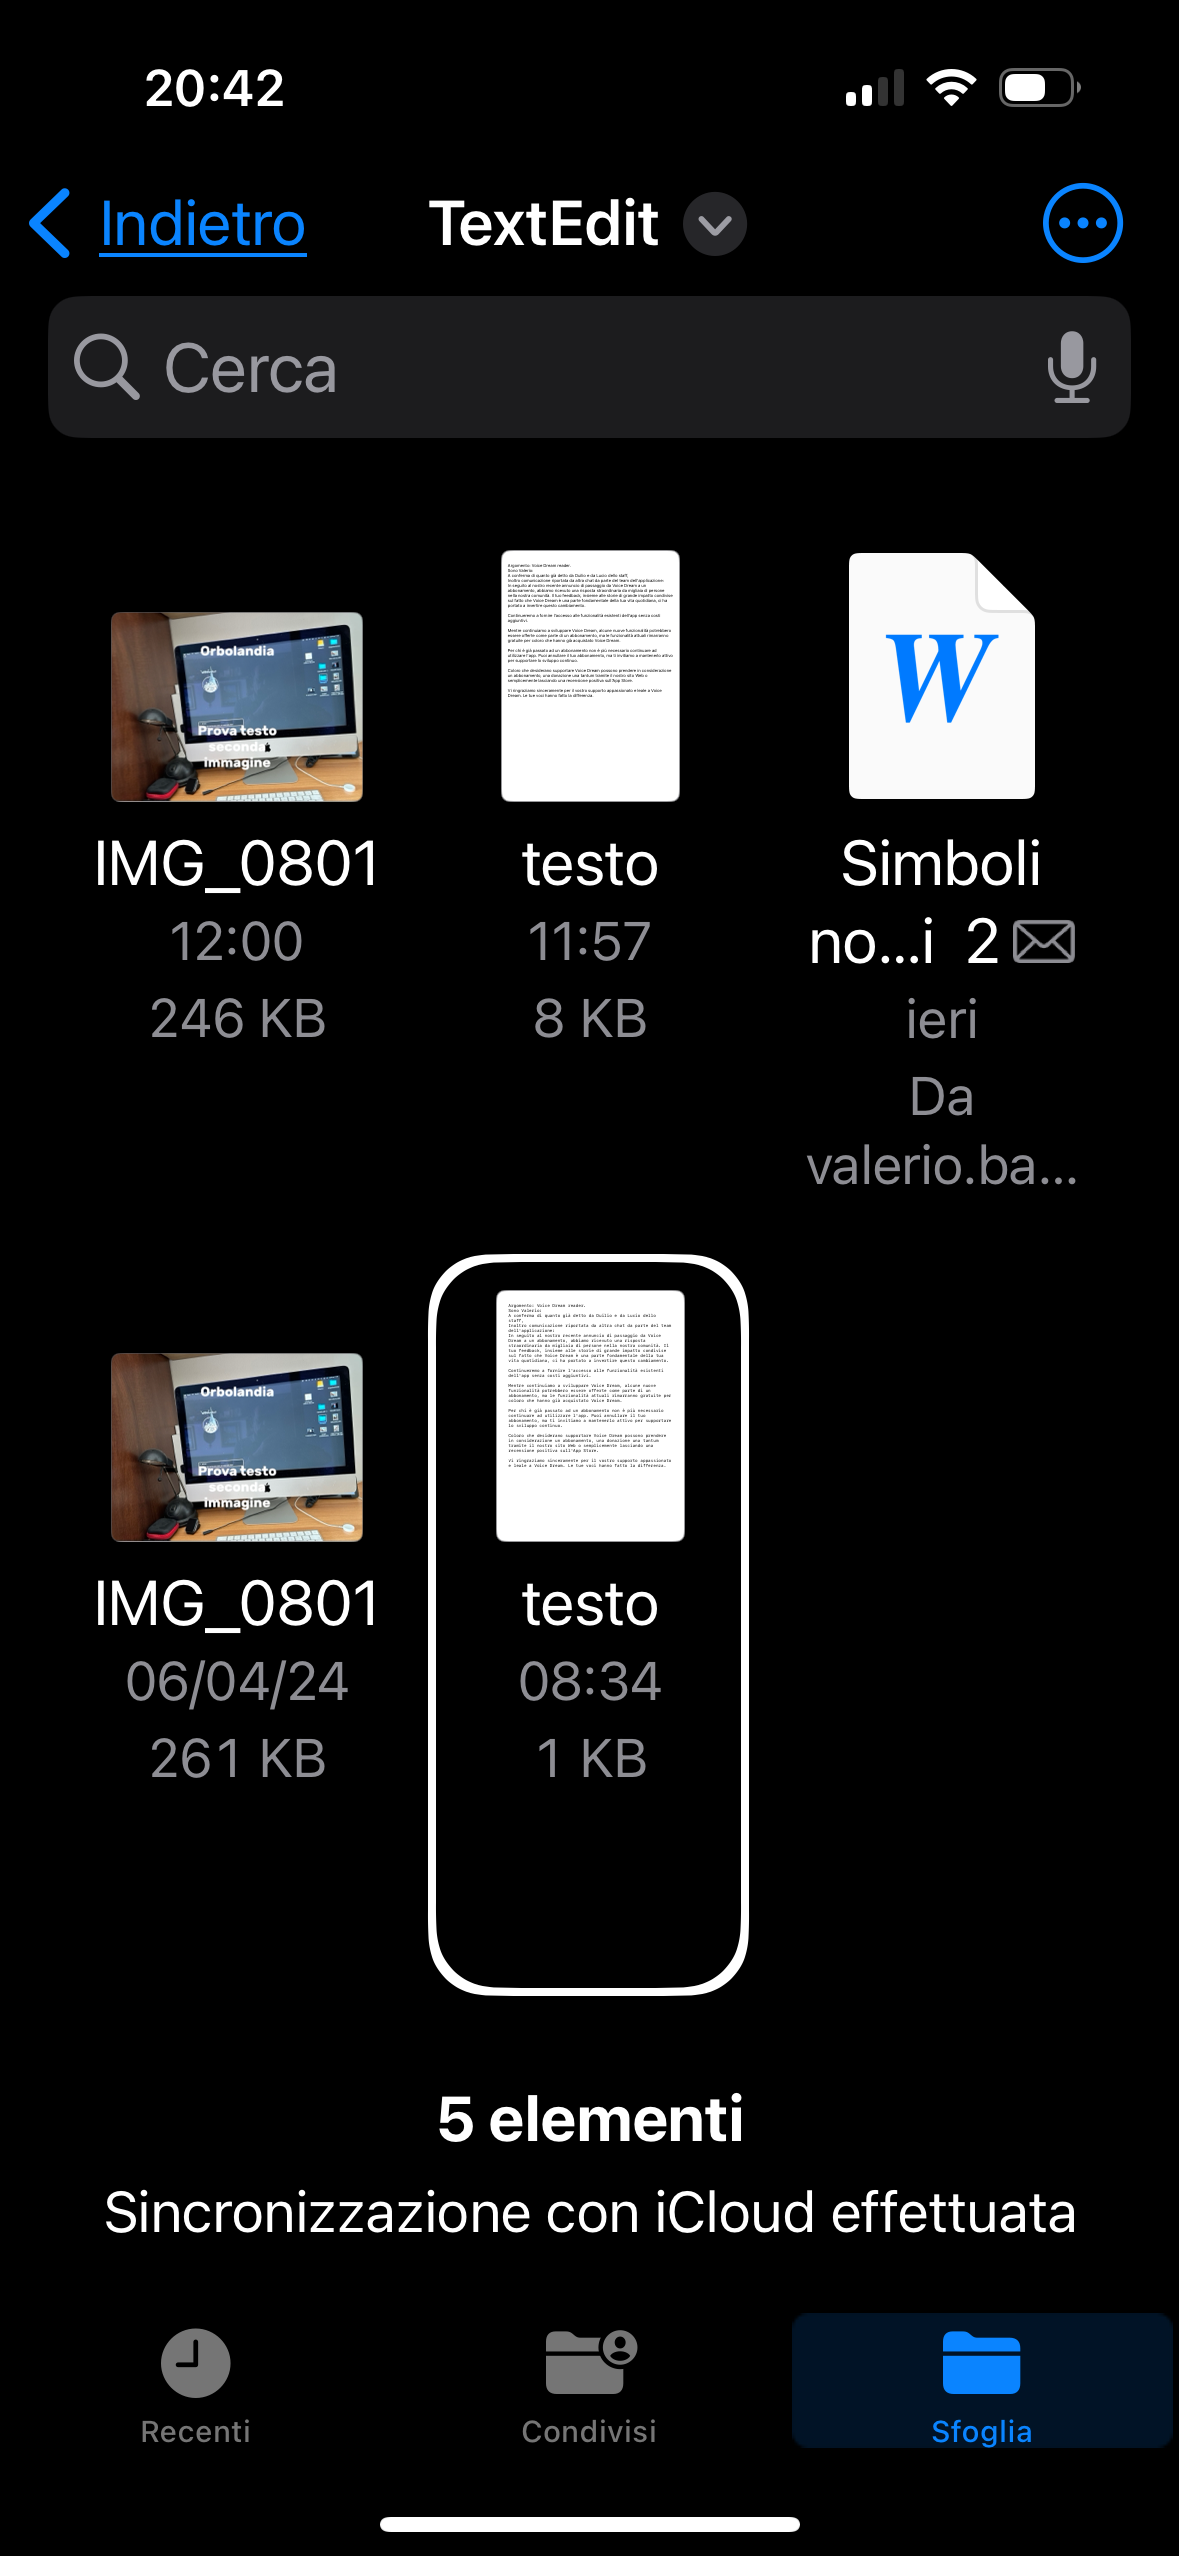 nell’immagine uno screenshot dell’iPhone aperto sulla pagina di iCloud drive è più specificatamente la pagina text edit per elaborare i file per il tutorial